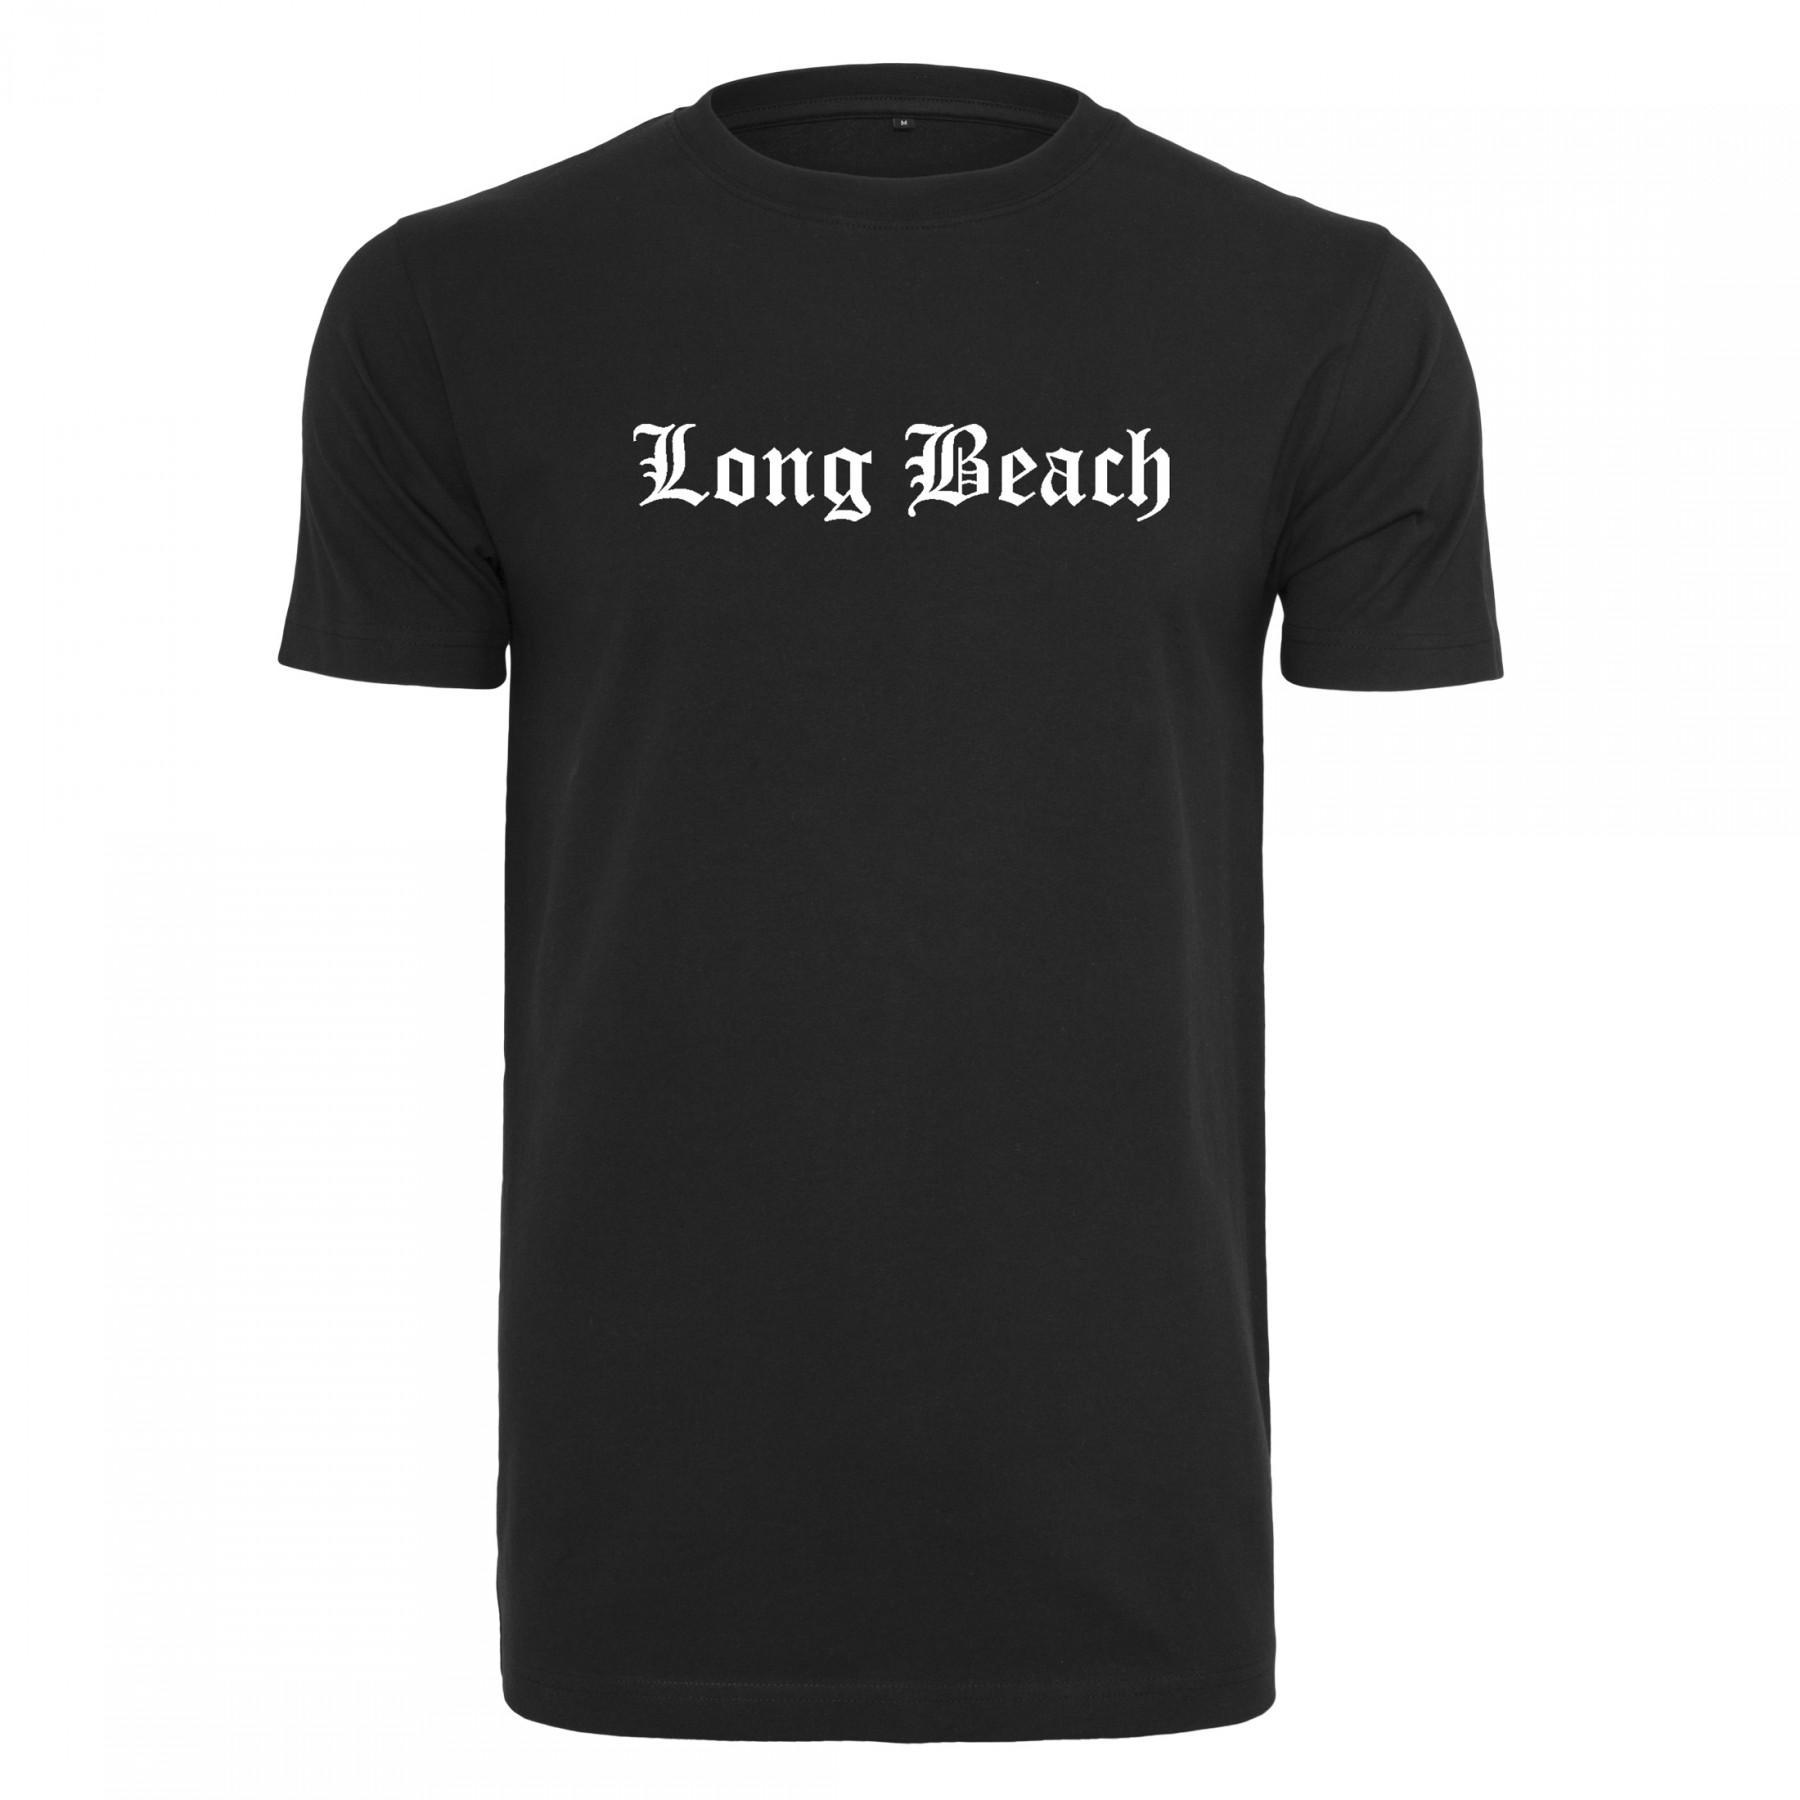 T-shirt Mister Tee long beach